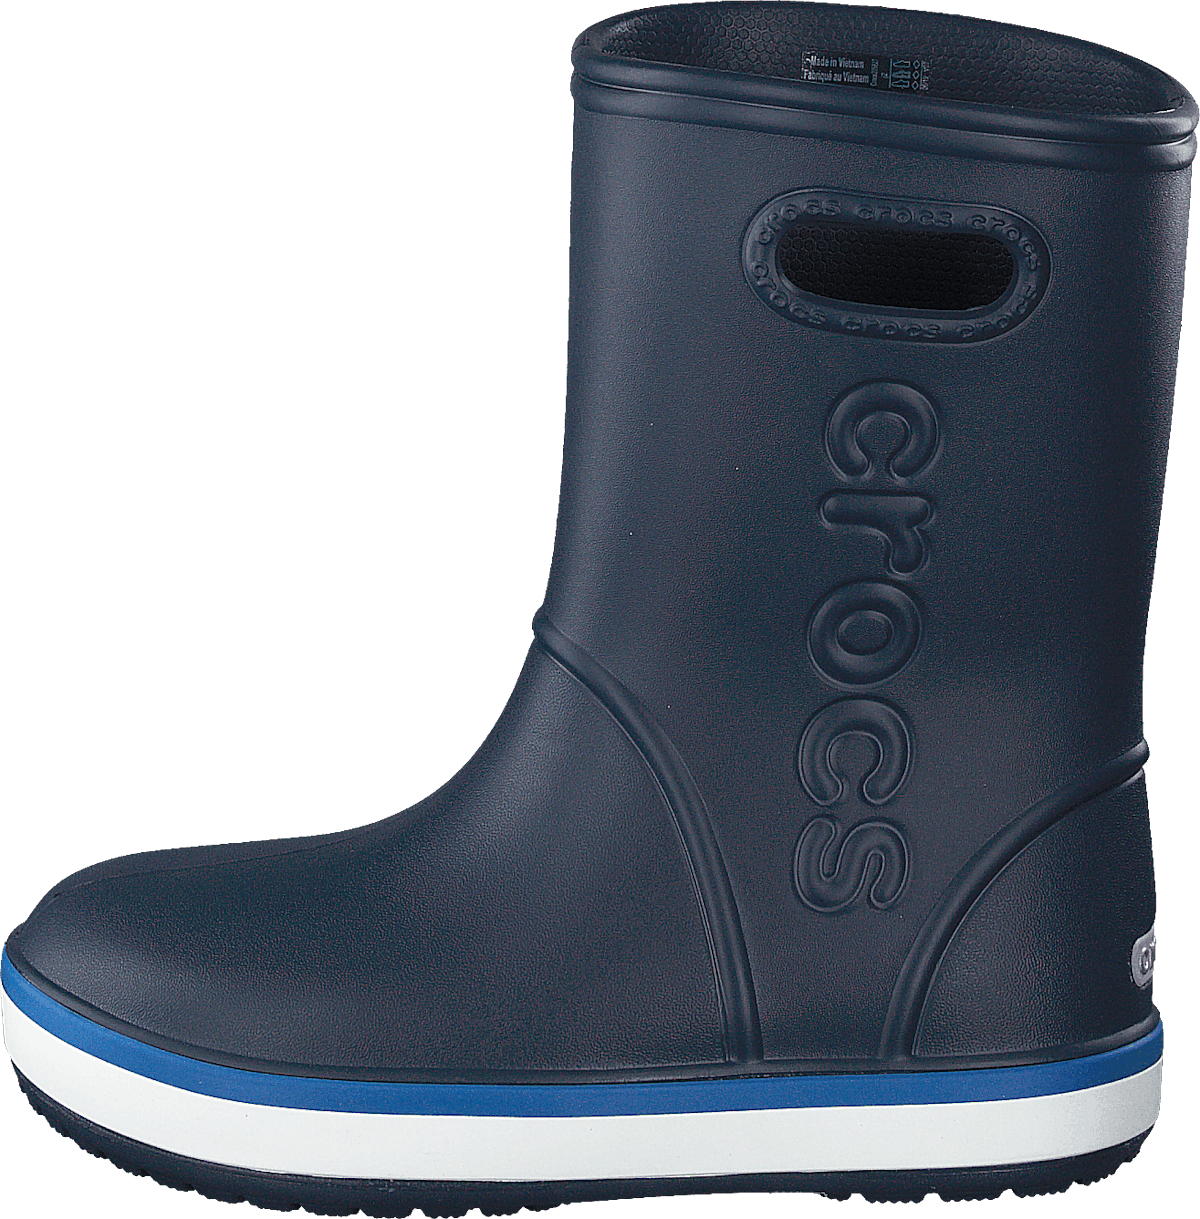 Crocband Rain Boot Kids Navy / Bright Cobalt